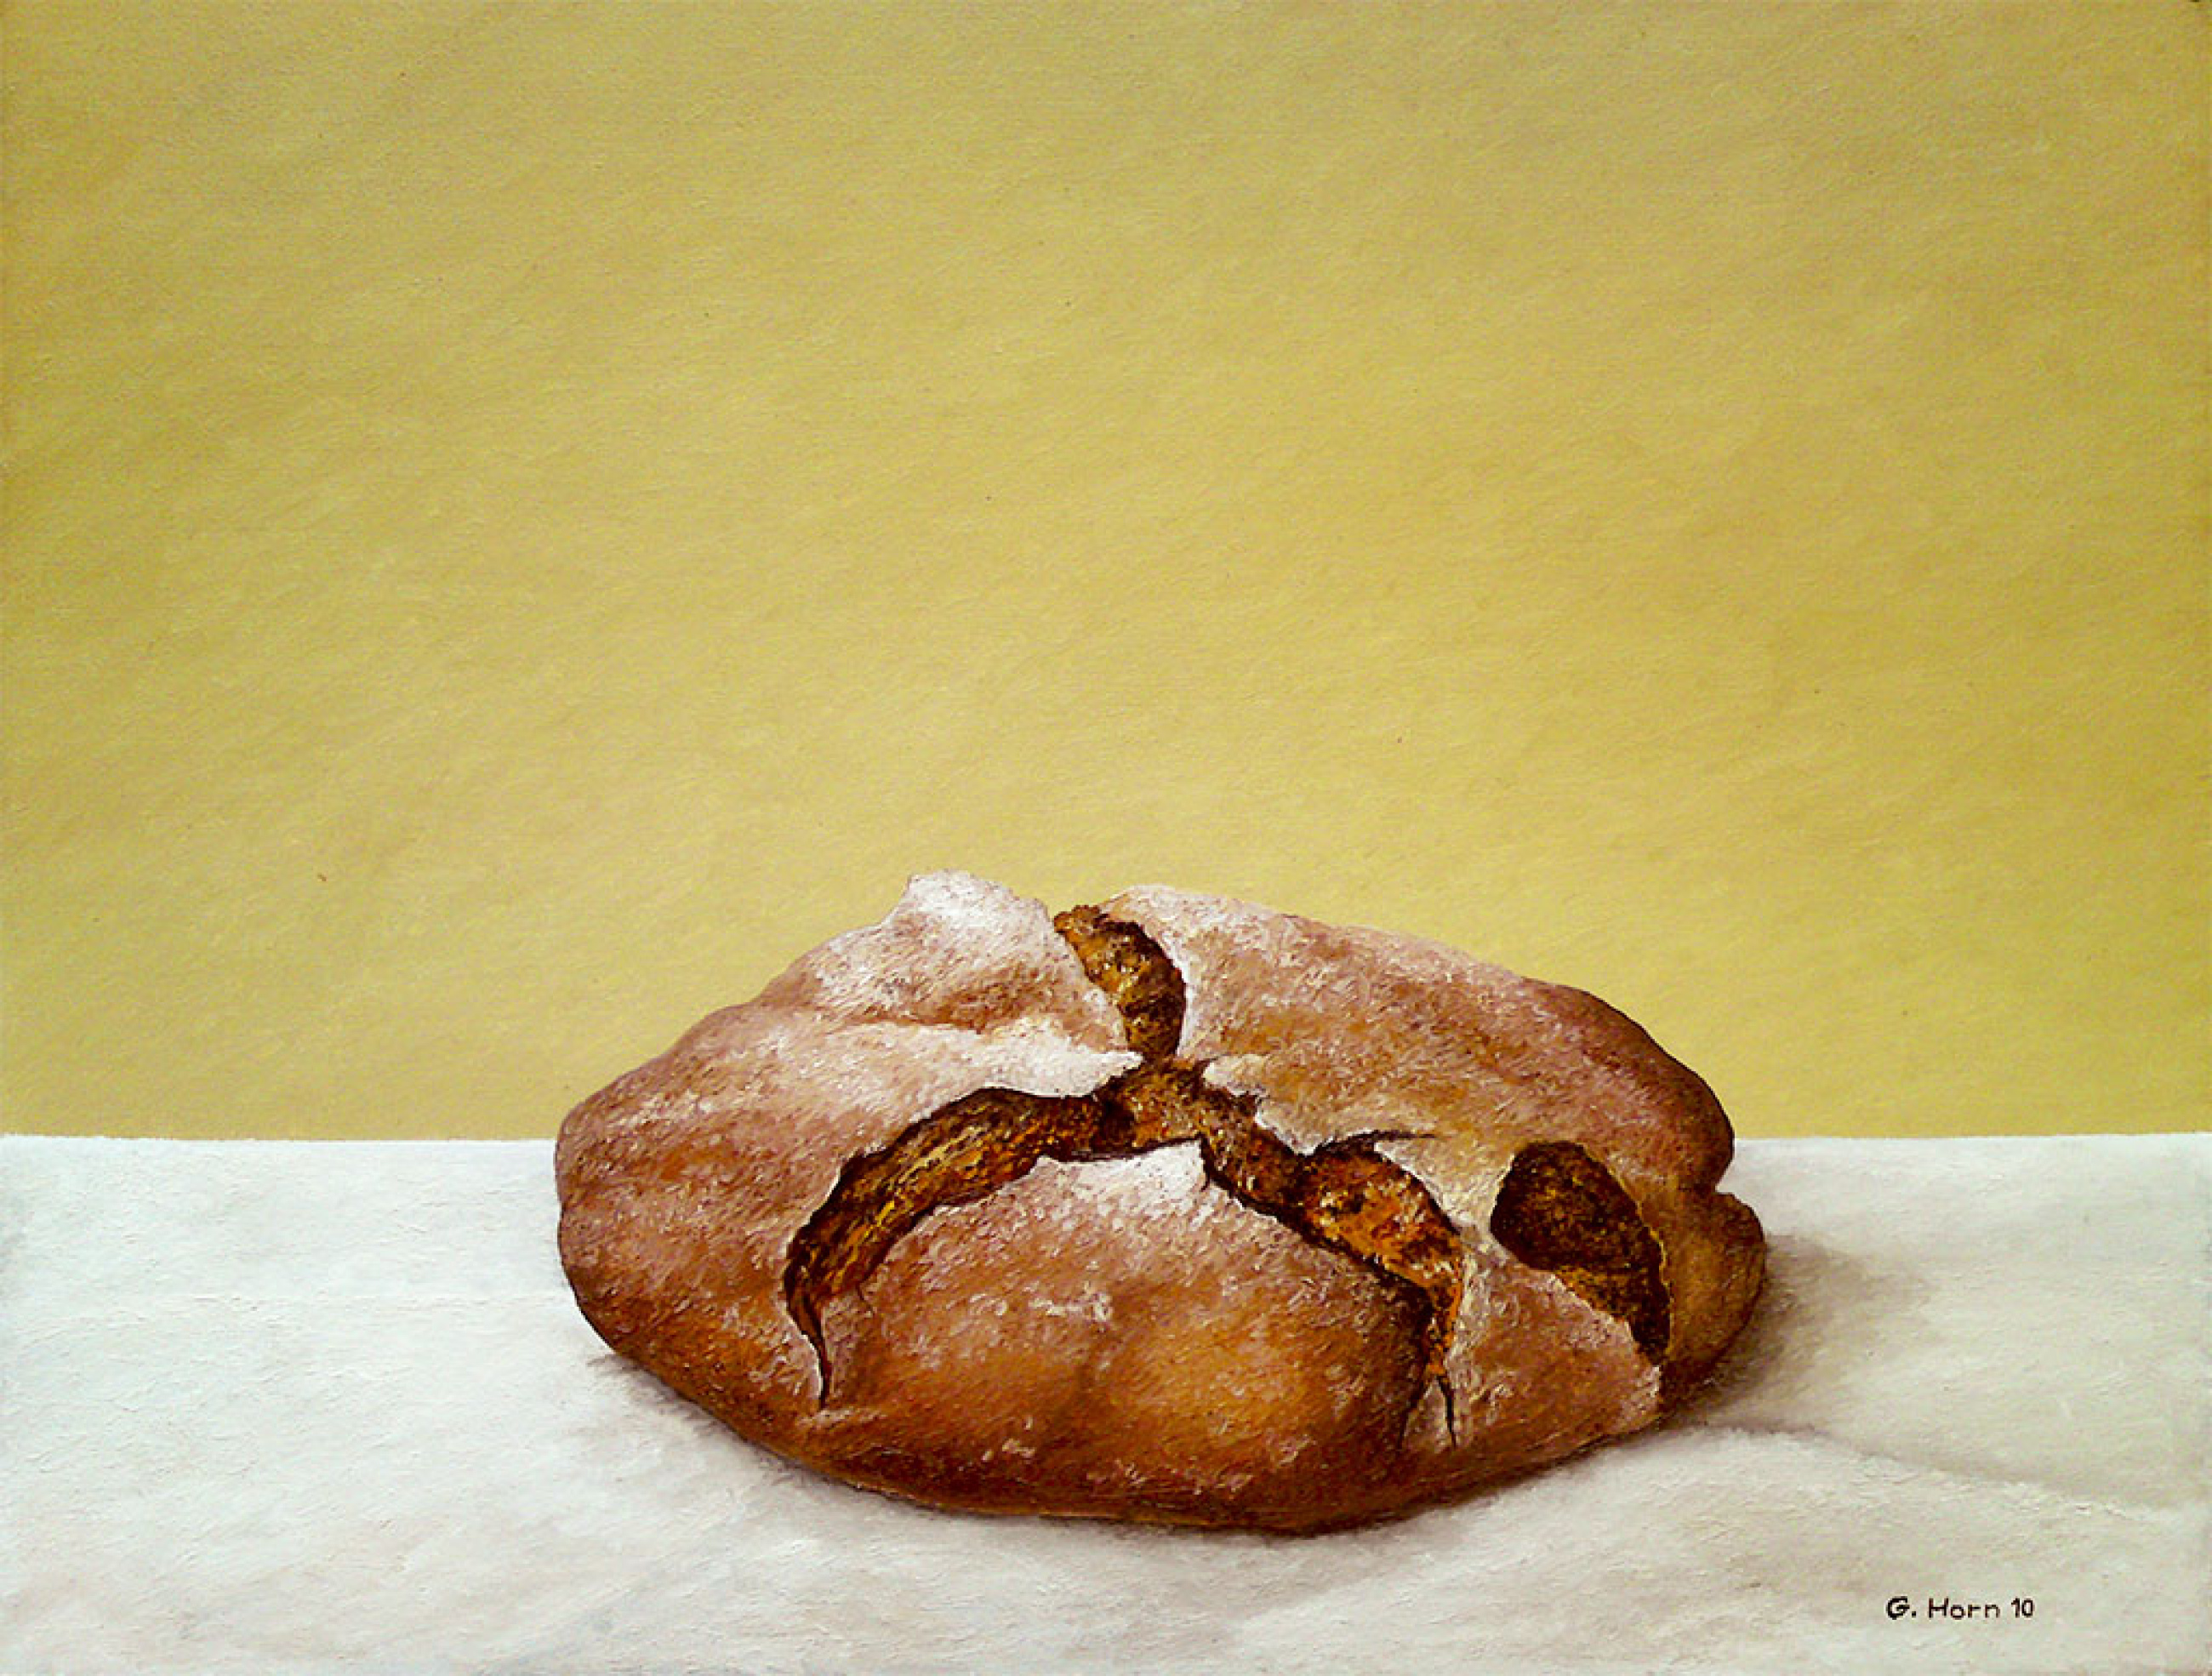 Abbildung von Brot 2010 von Günter Horn